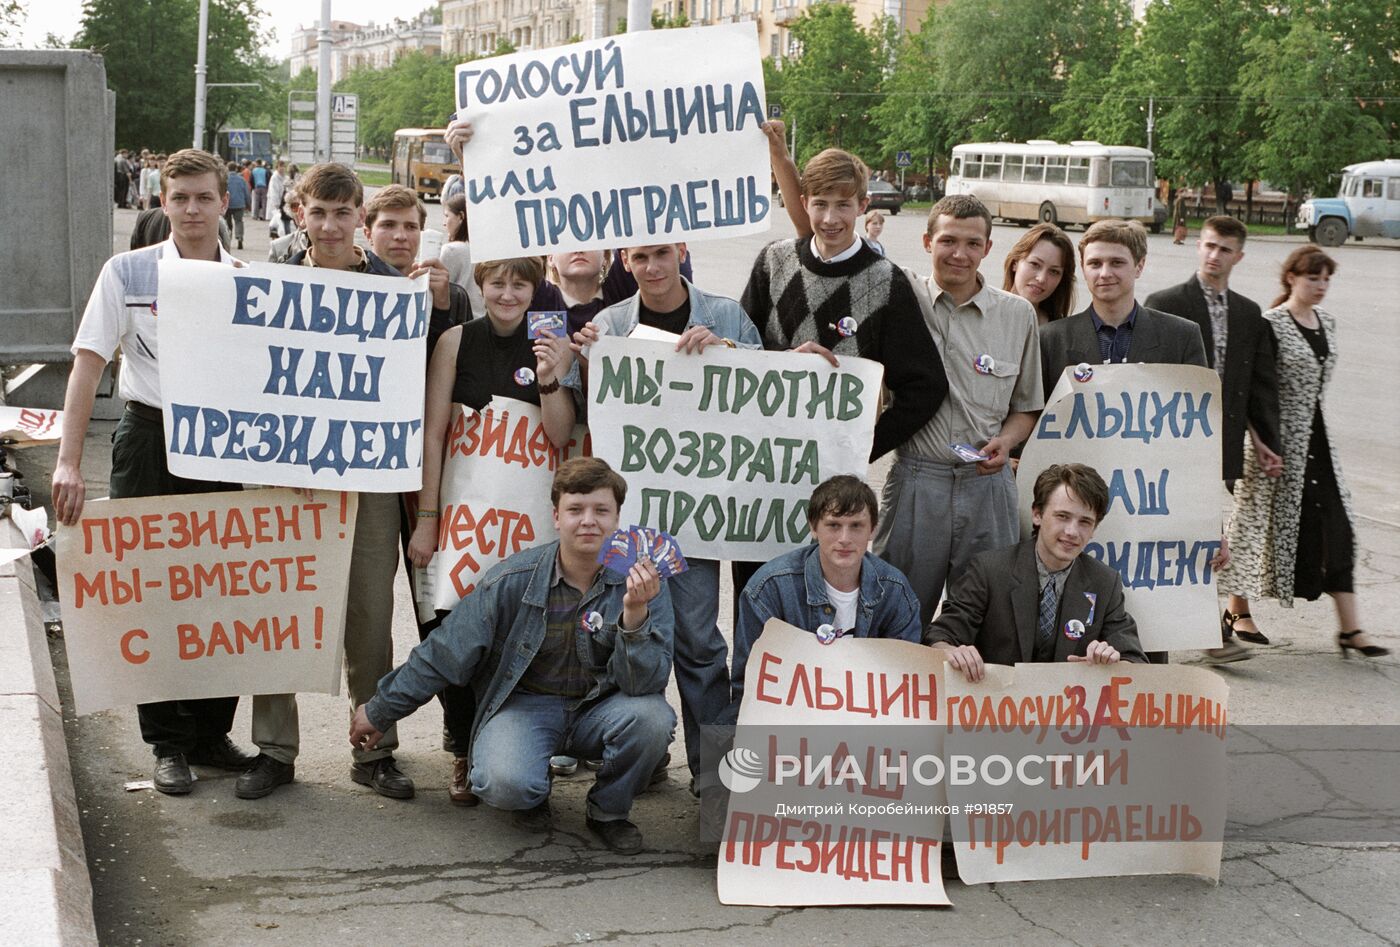 Голосуй а то проиграешь. Голосуй за Ельцина. Ельцин плакат. Митинги в 90-х годах. Плакаты в поддержку Ельцина.